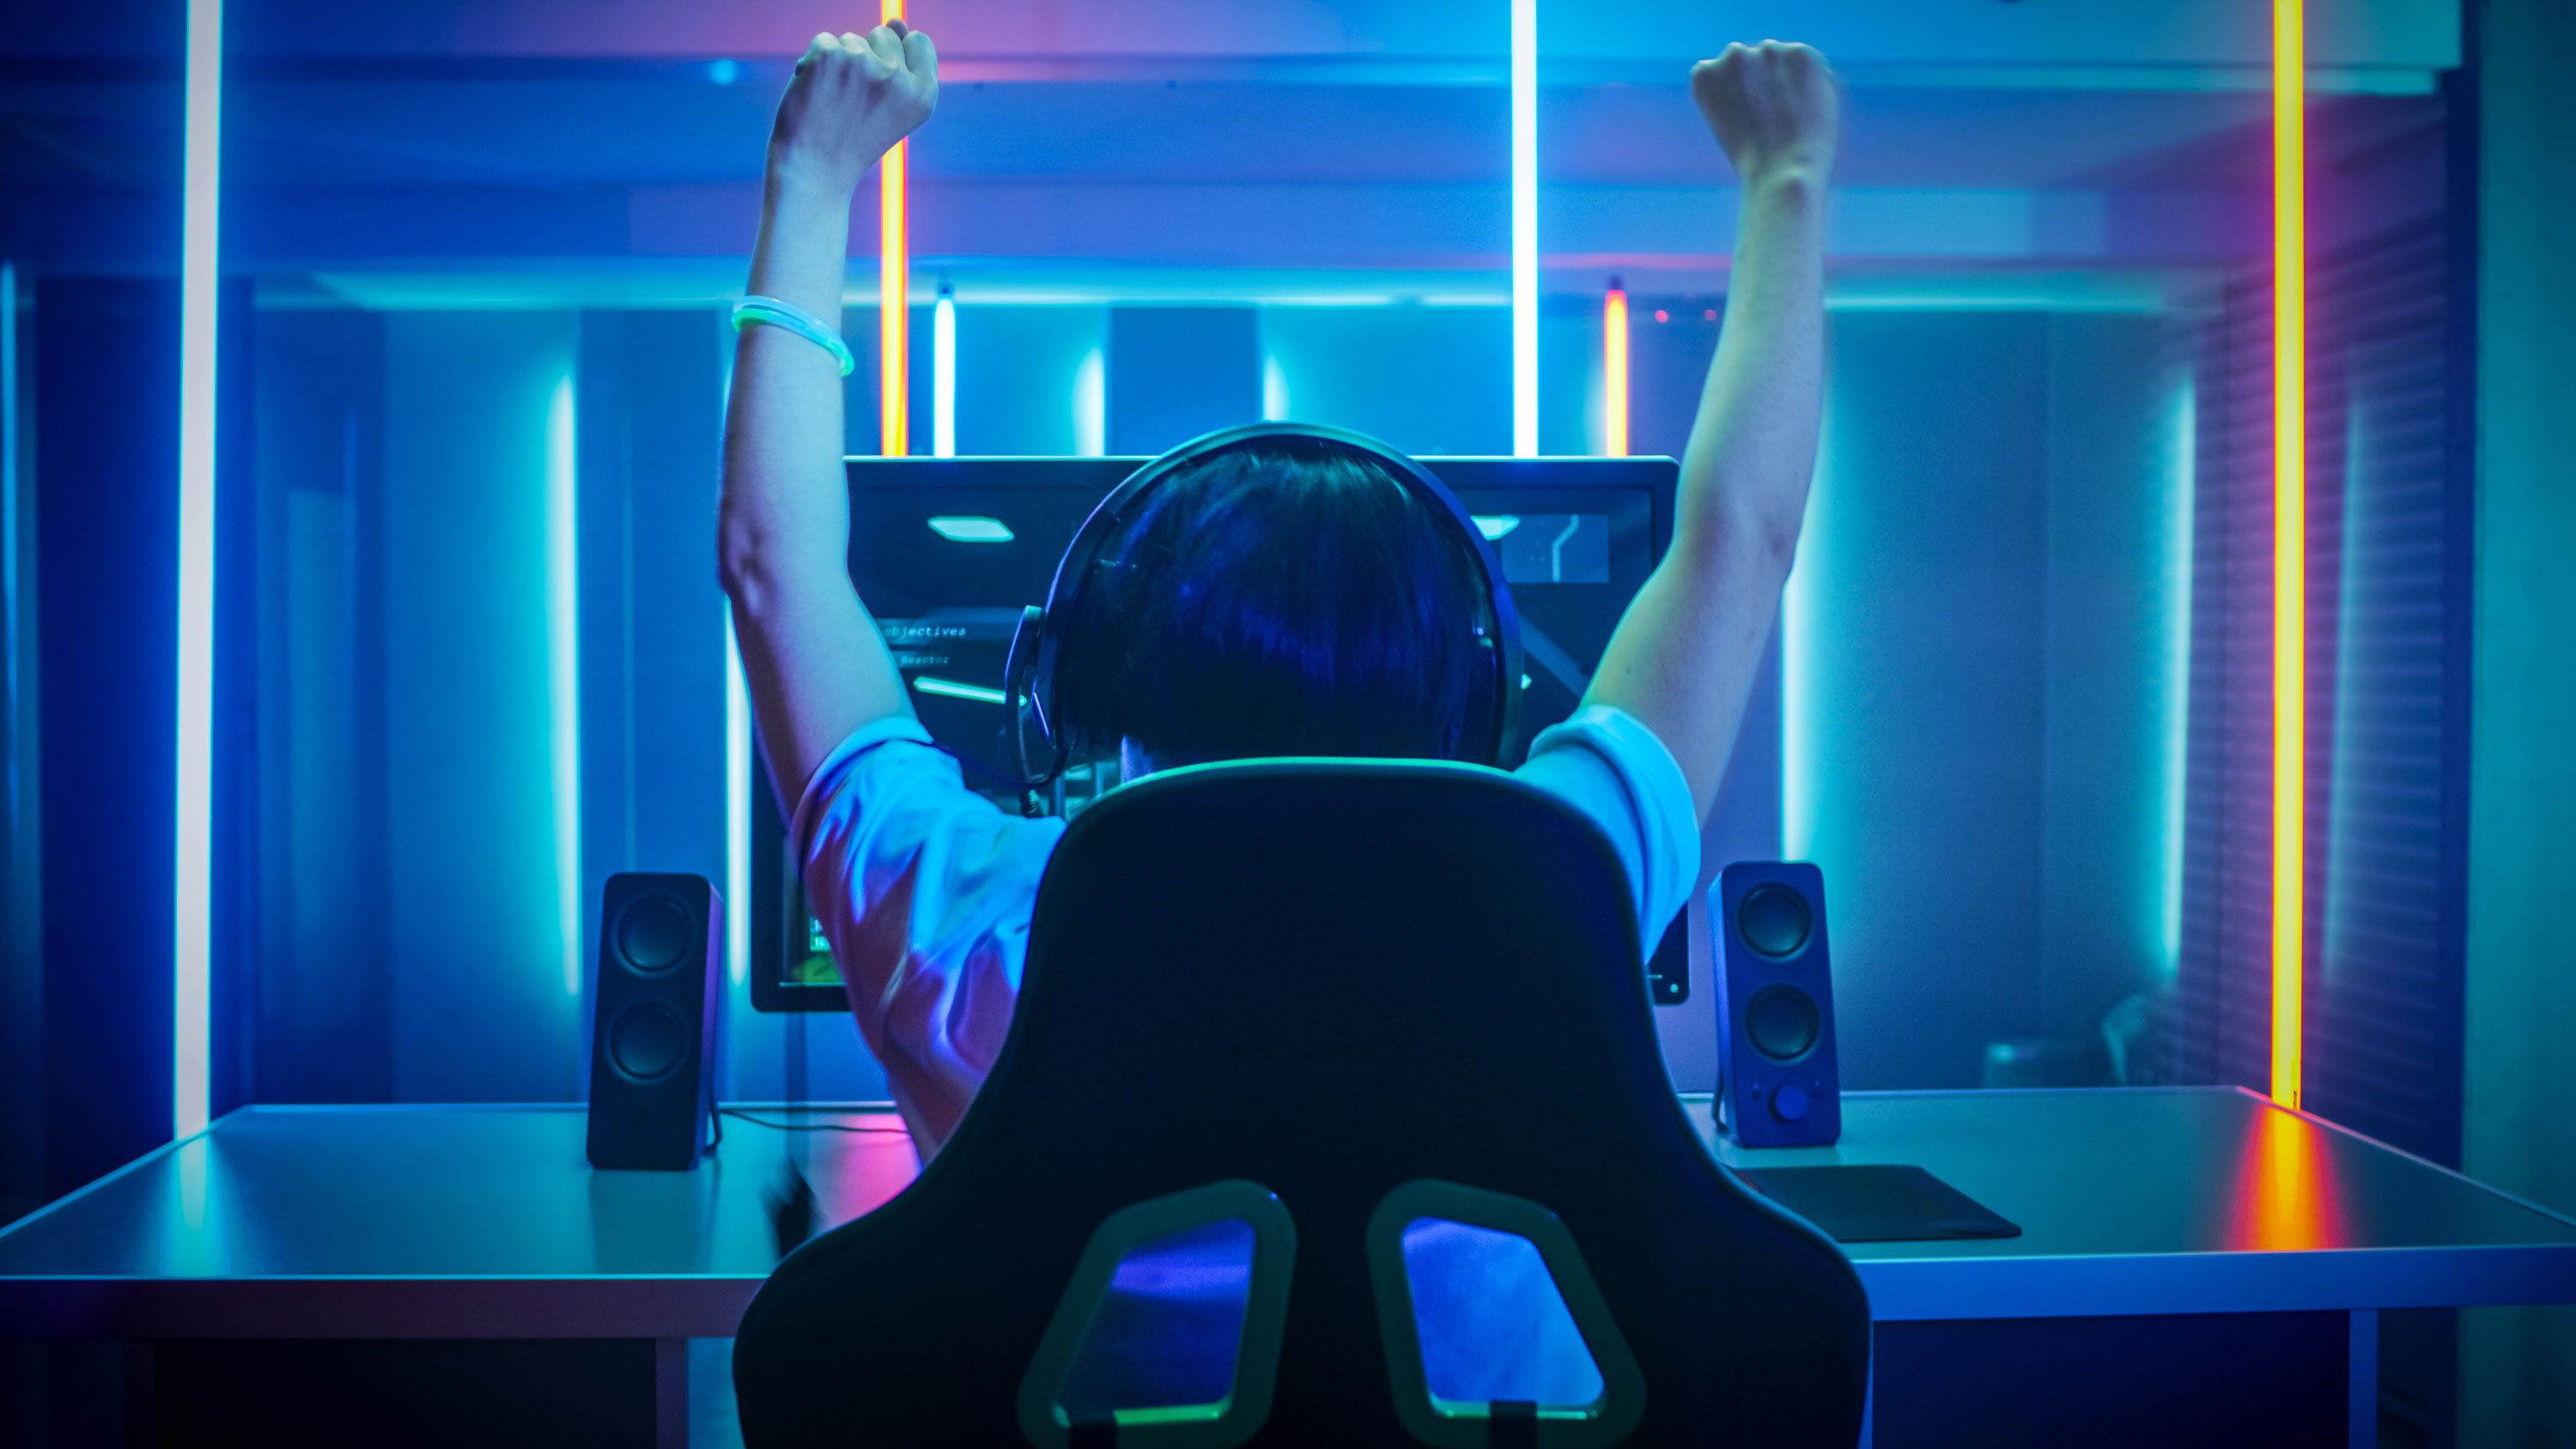 В Китае несовершеннолетним разрешили играть в видеоигры только час по выходным